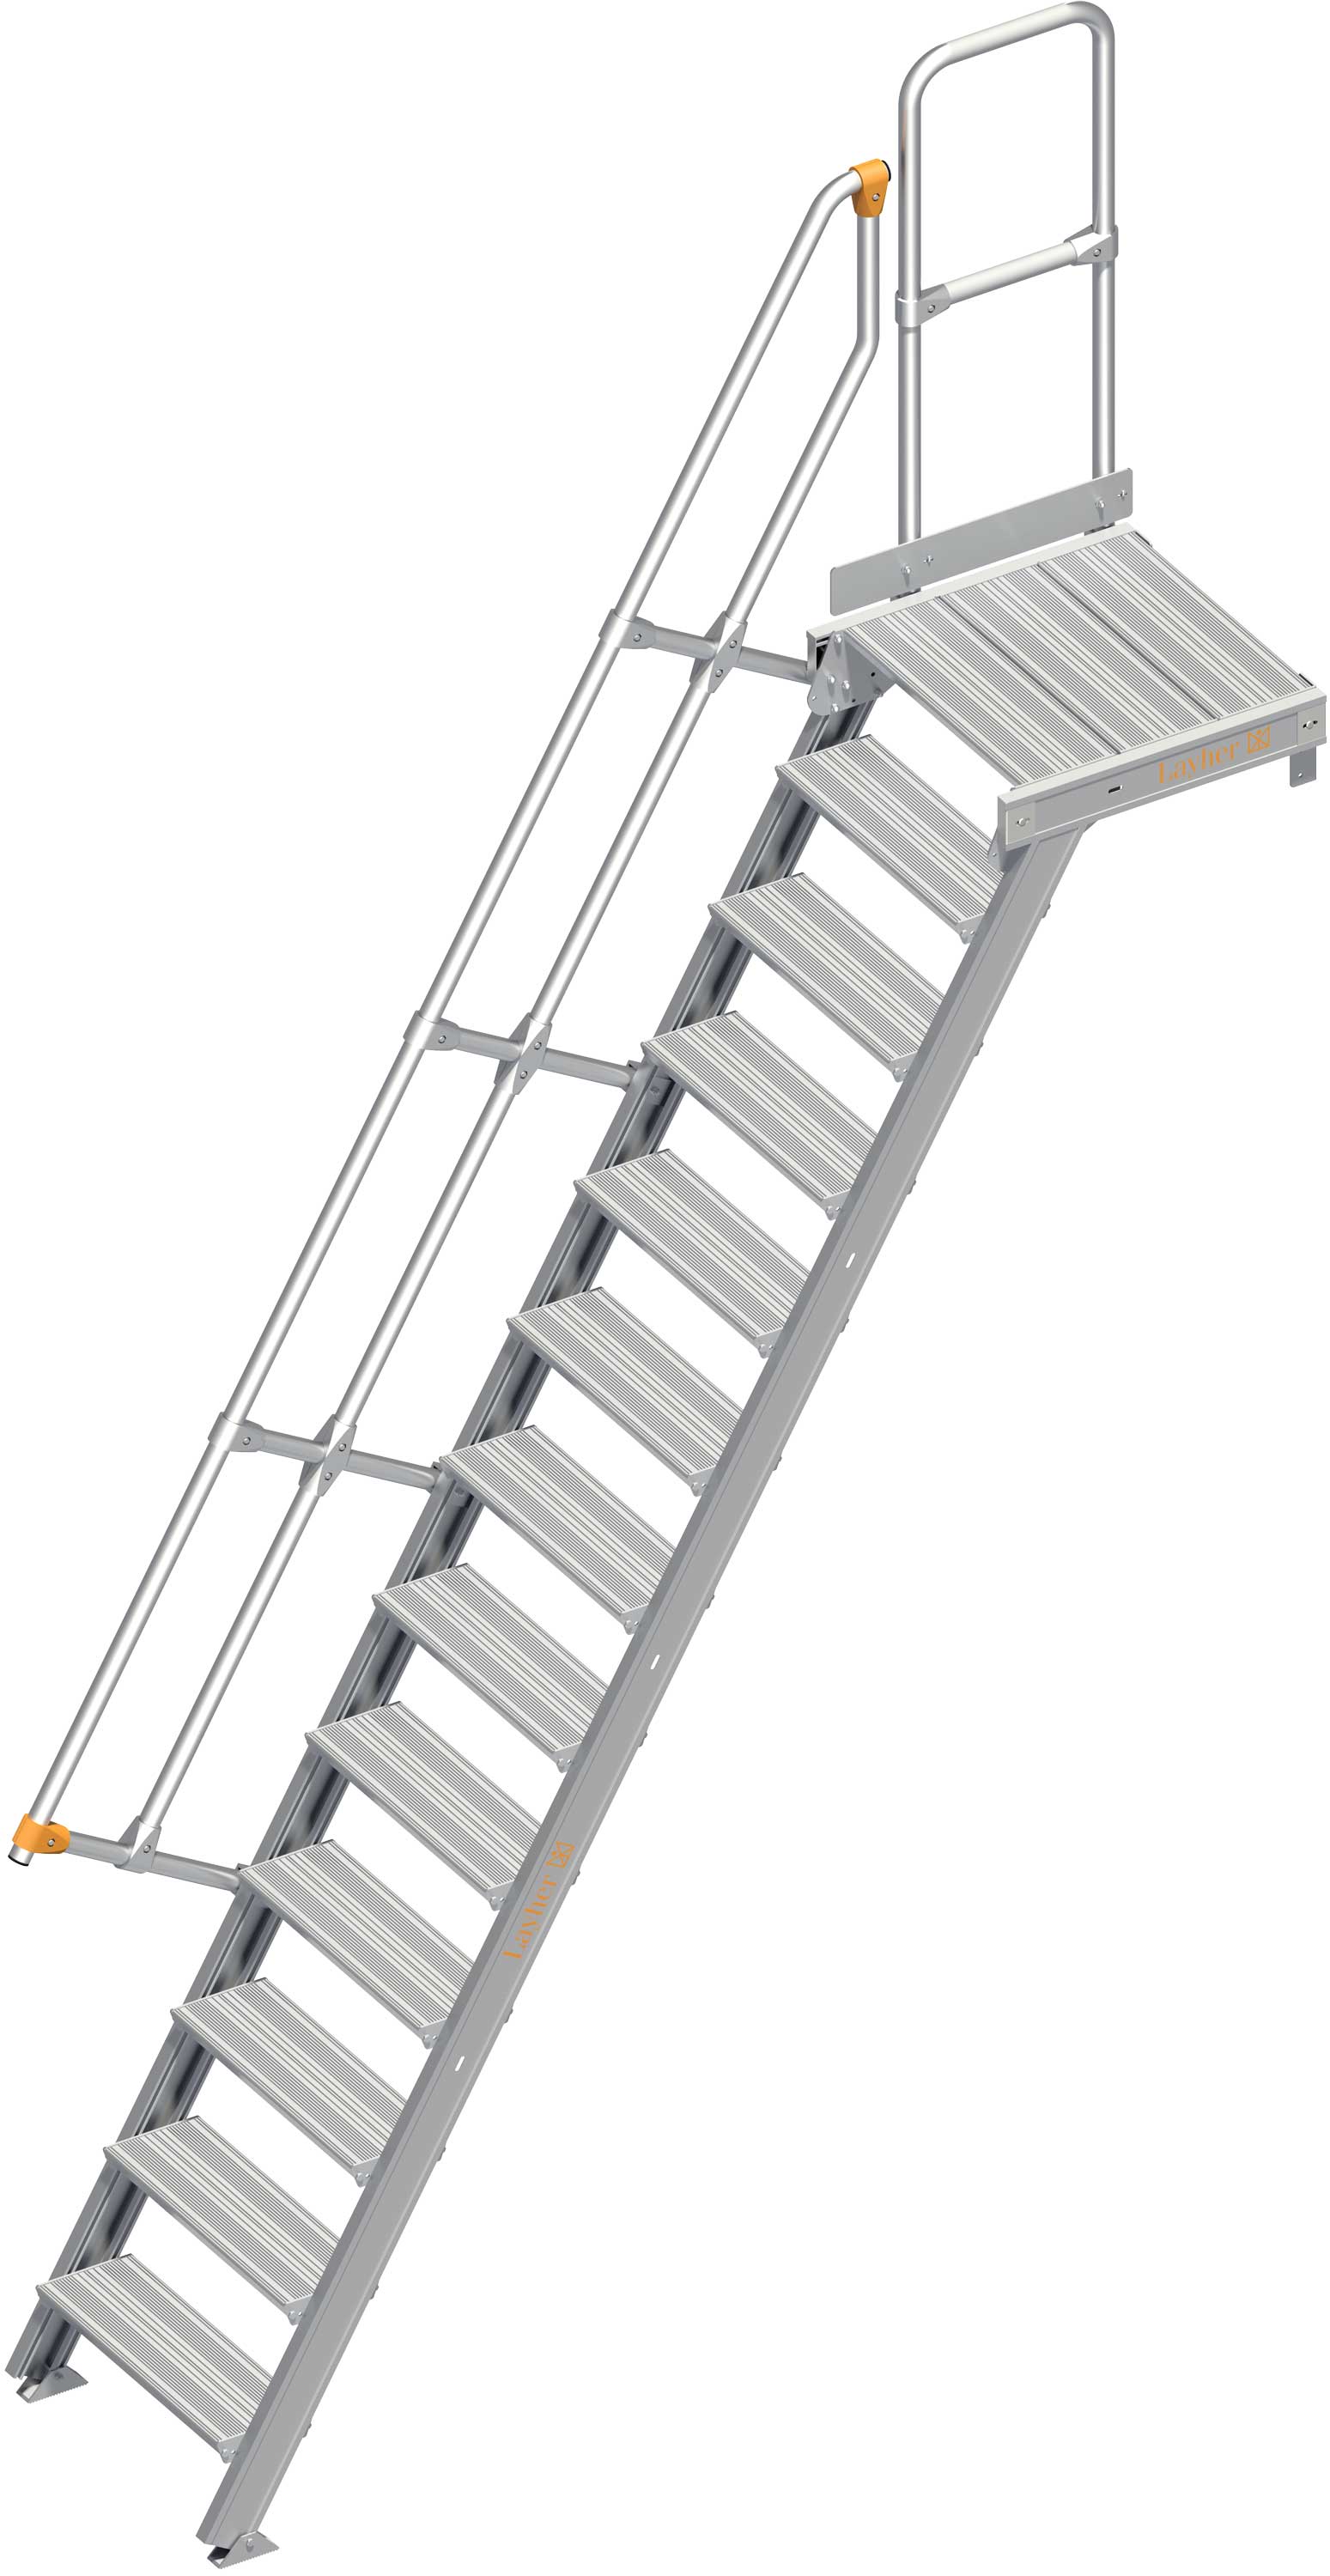 Layher Plattformtreppe 60° 13 Stufen - 600 mm breit